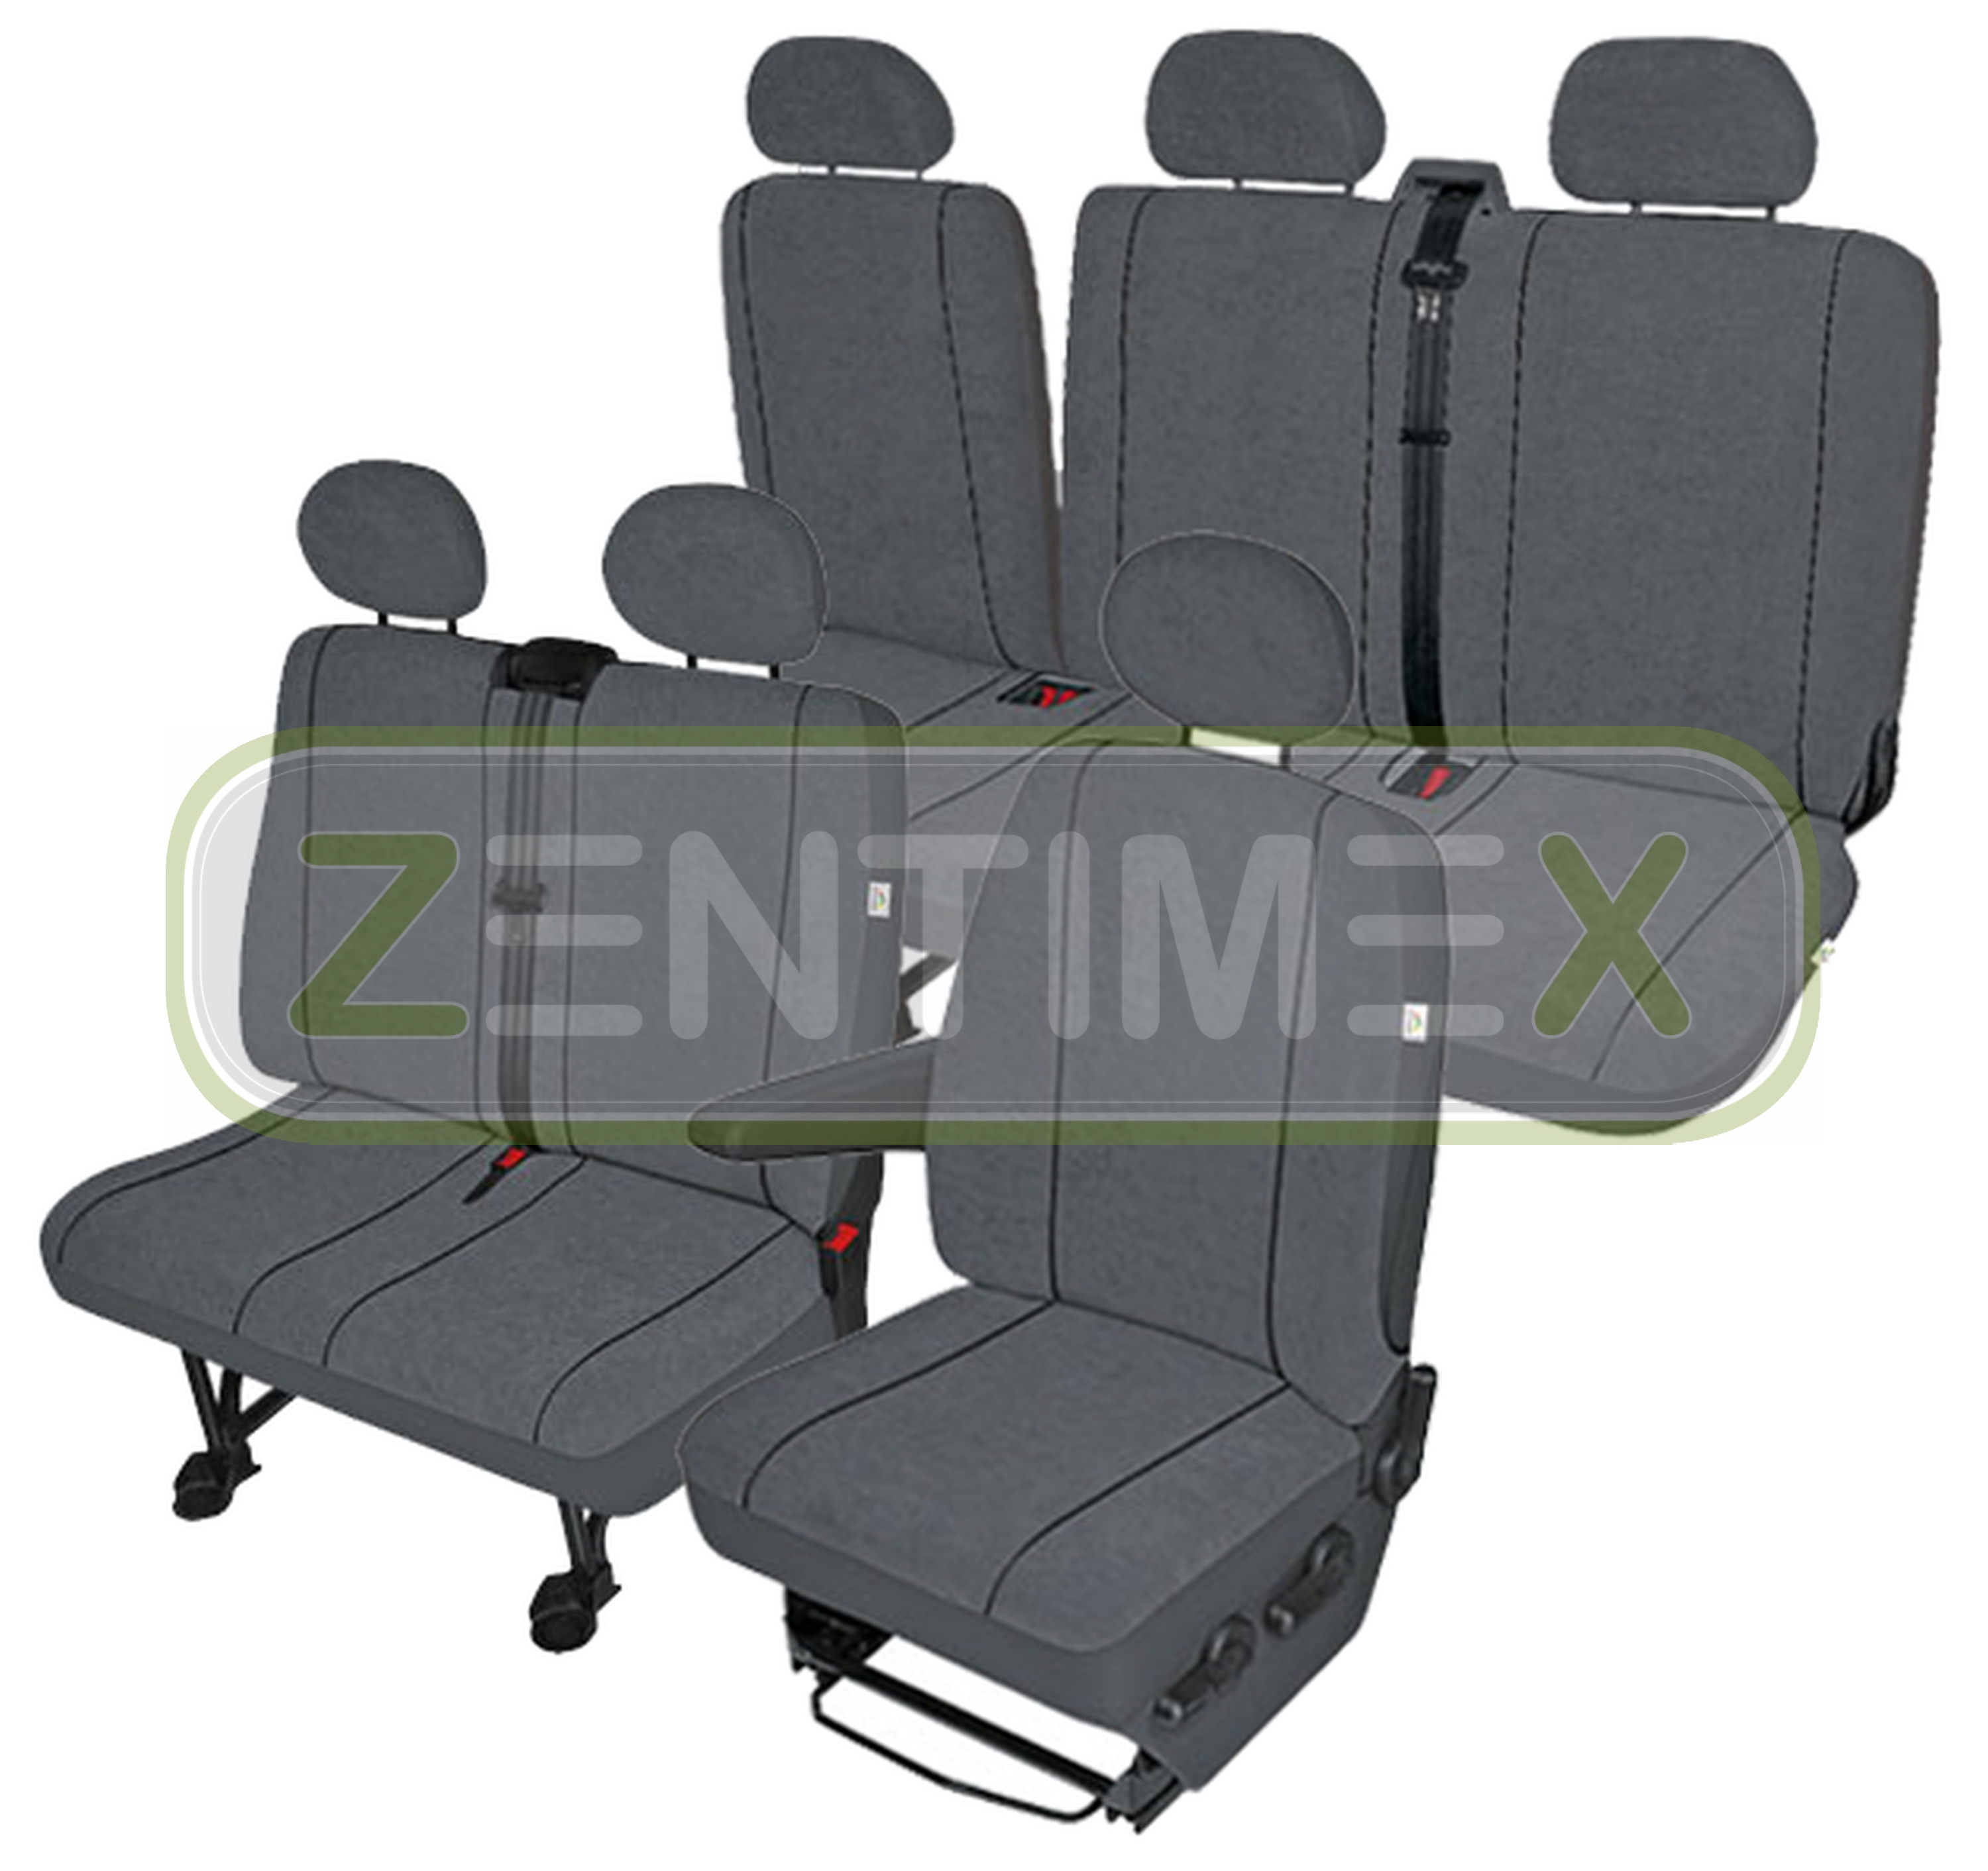 Sitzbezüge housses de protection set EK vw t5 Caravelle tissu Foncé Gris